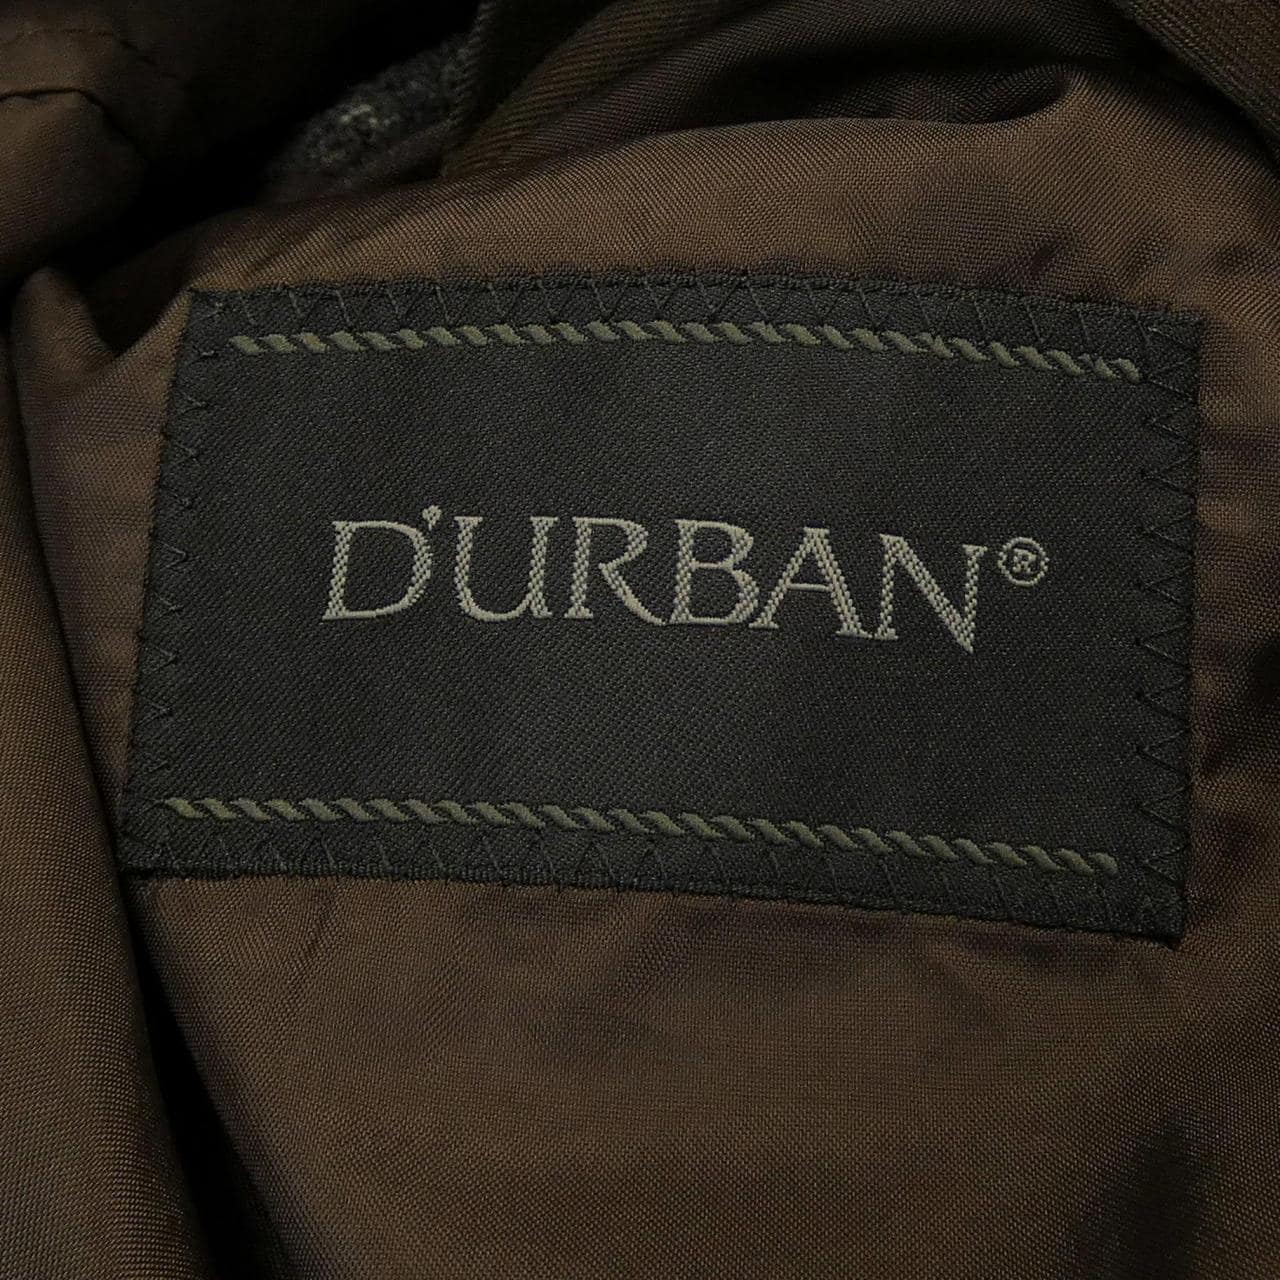 DURBAN coat